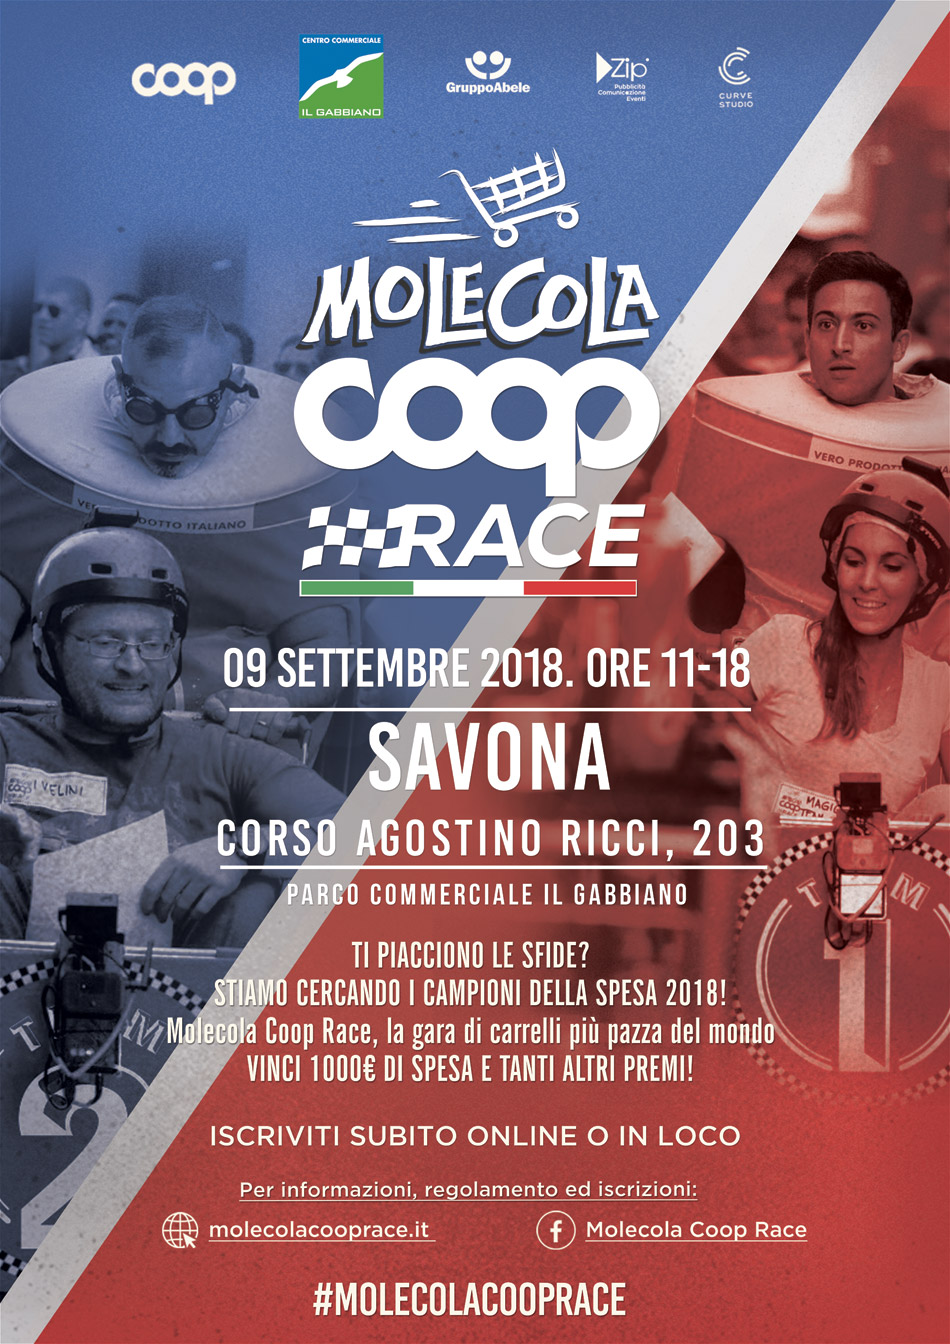 Molecola Coop Race Gabbiano Savona_9 settembre 2018